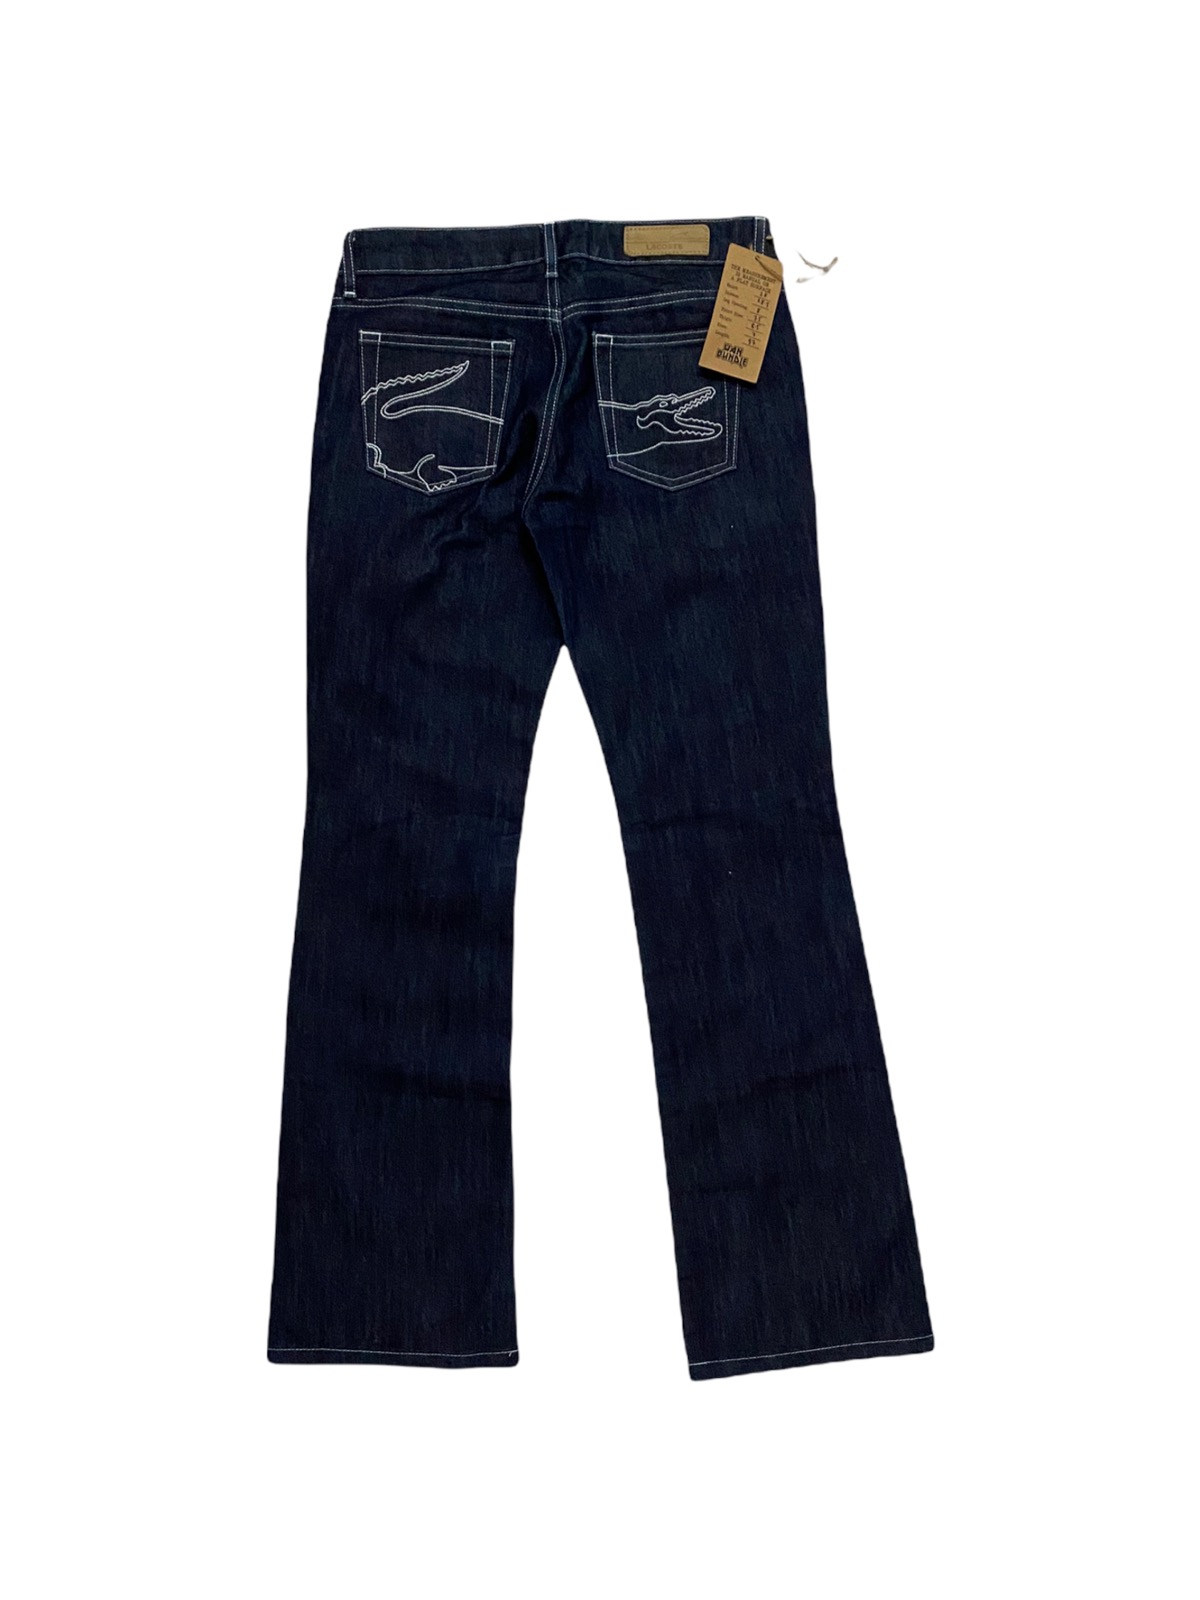 Women Lacoste Jeans Denim Made in Japan - 3